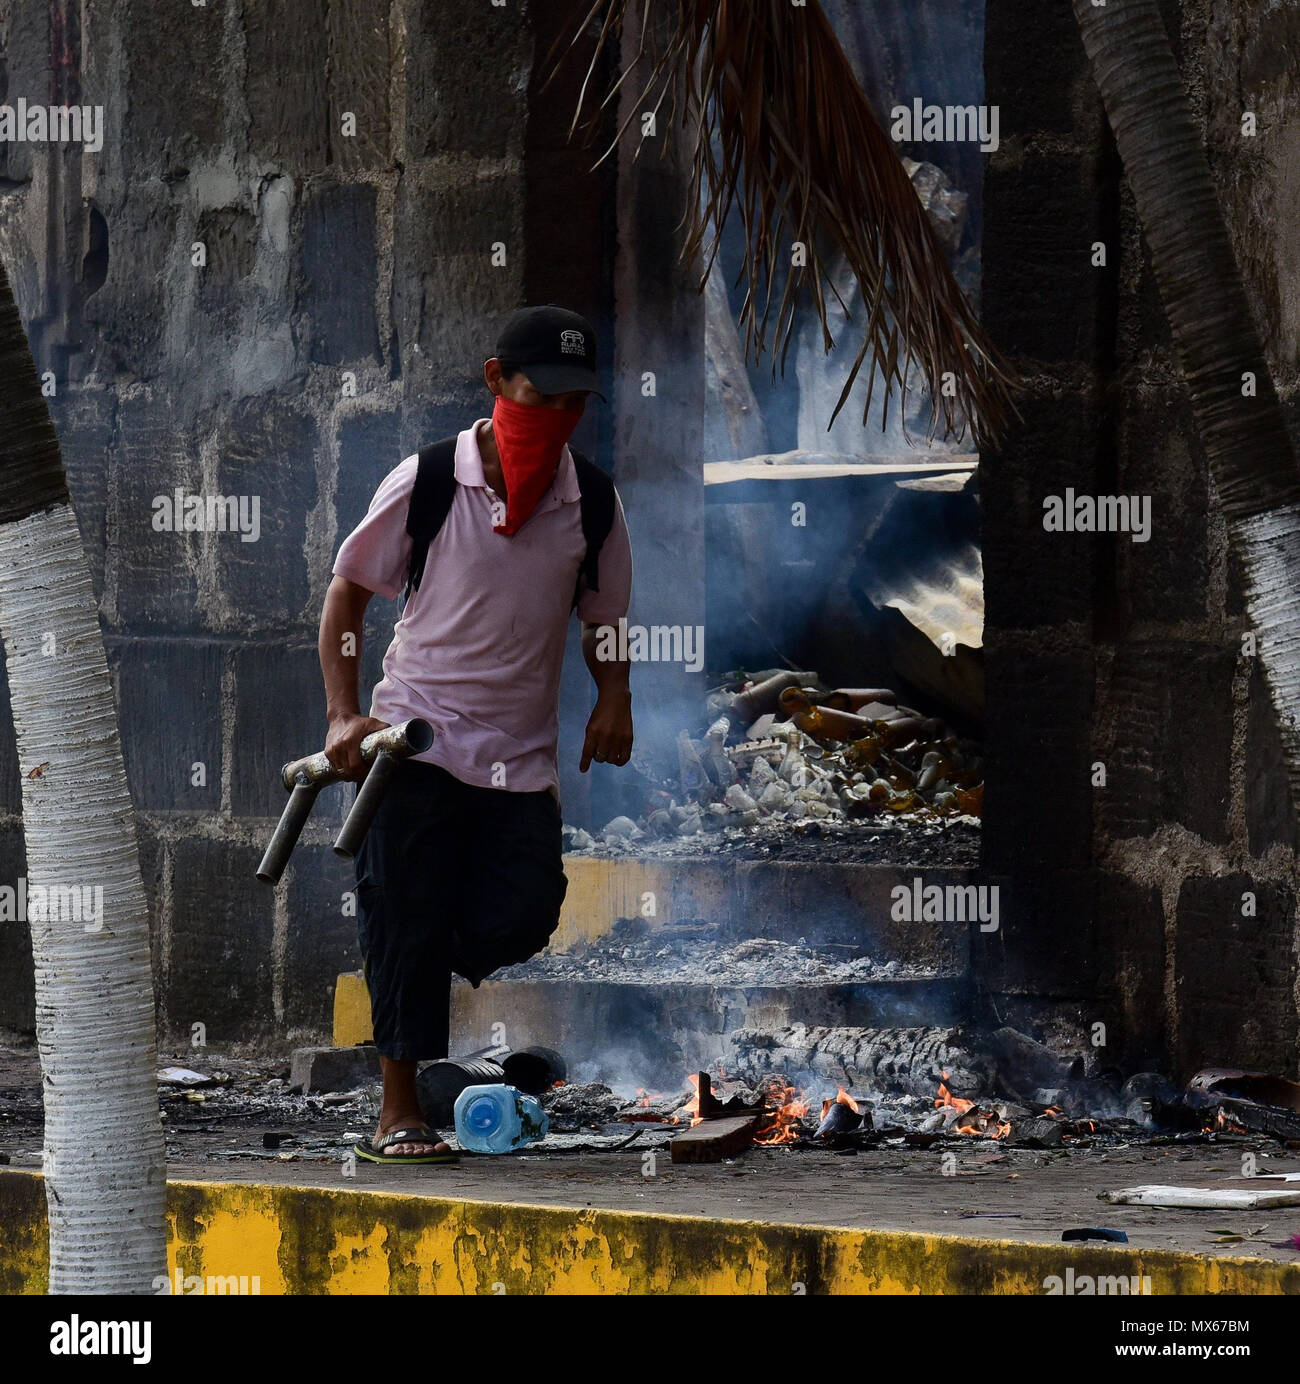 02 Juni 2018, Nicaragua, Masaya: eine Demonstrantin sucht Deckel in einen Protest gegen die Regierung. Nach Wochen der Proteste, die Situation in Nicaragua weiter eskaliert. In einer neuen Welle der Gewalt, drei Menschen starben. An vielen Orten nächtlichen Plünderungen und Angriffe gegen Demonstranten berichtet wurden. Foto: Carlos Herrera/dpa Stockfoto